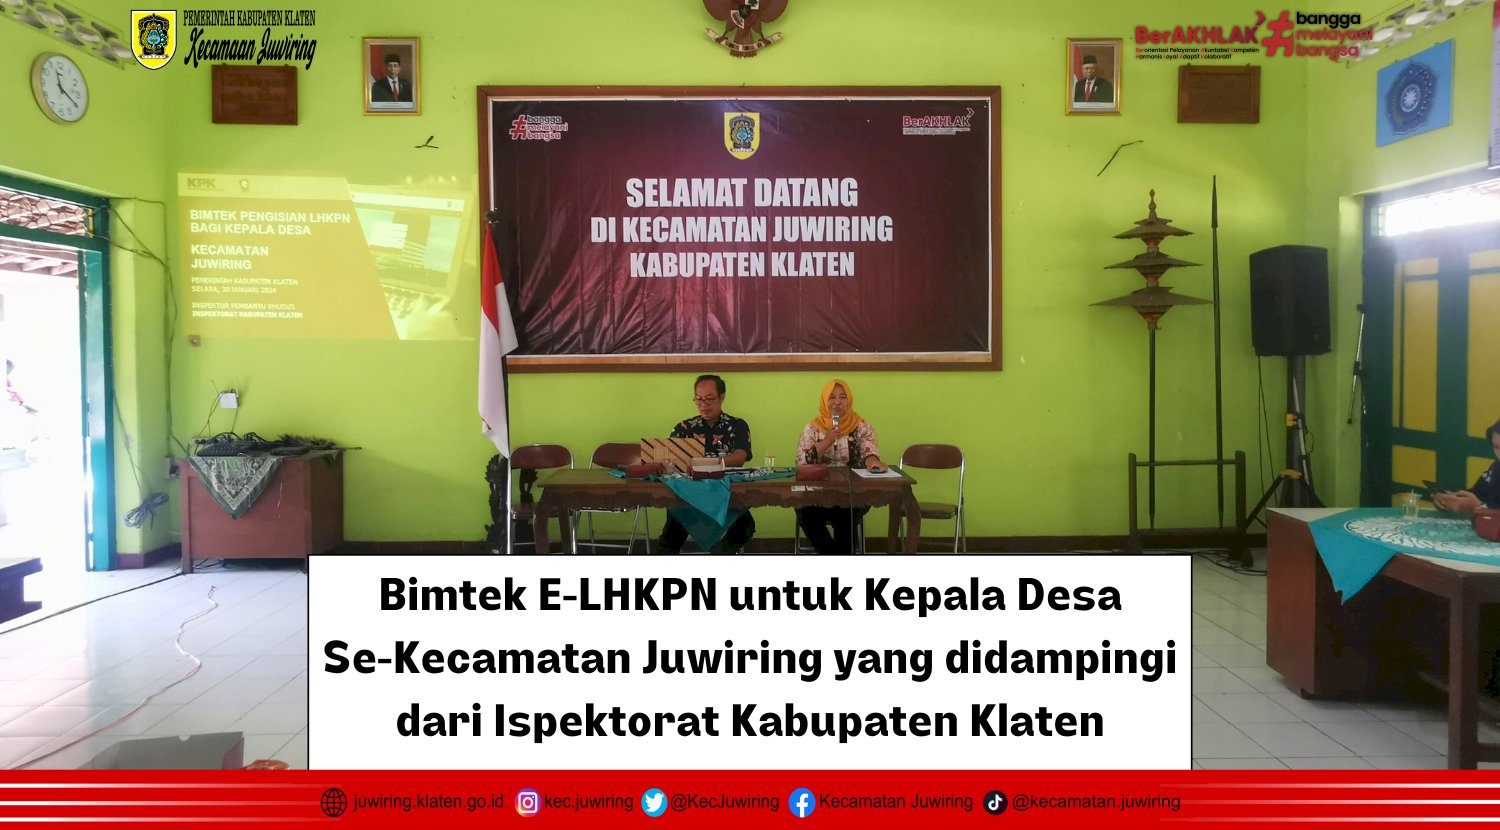 Bimtek E-LHKPN untuk Kepala Desa Se-Kecamatan Juwiring yang didampingi dari Ispektorat Kabupaten Klaten